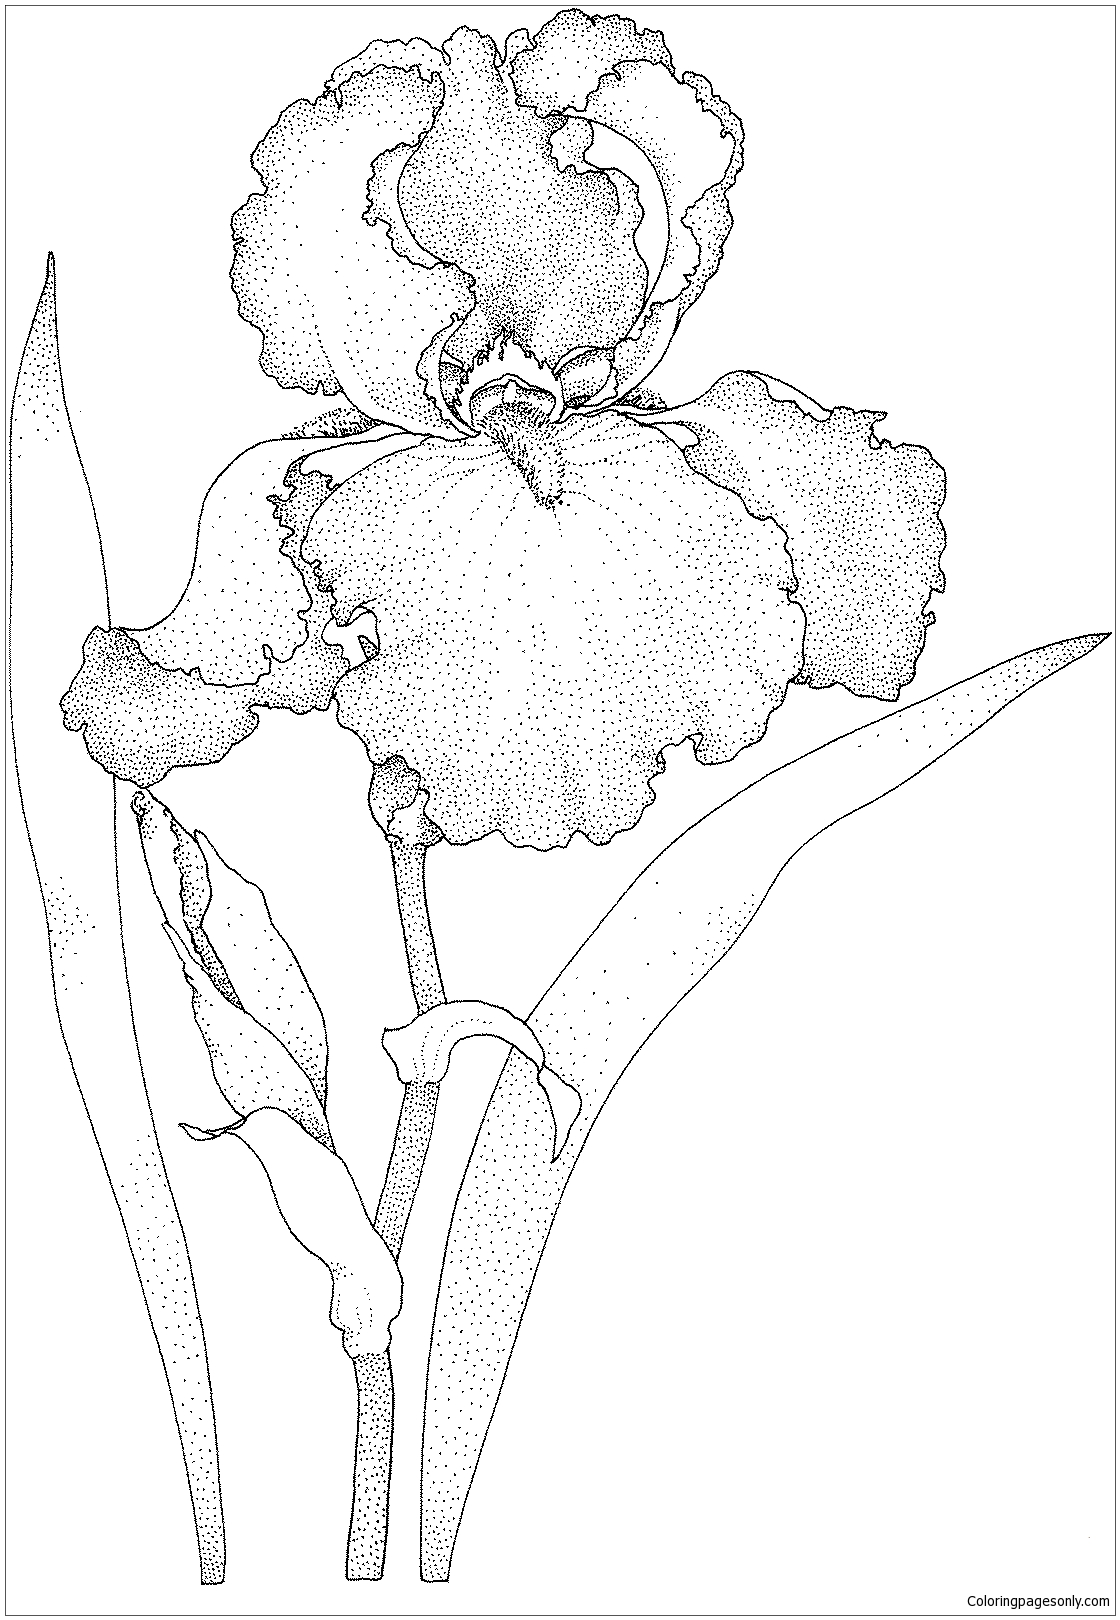 Irisblüte von Iris